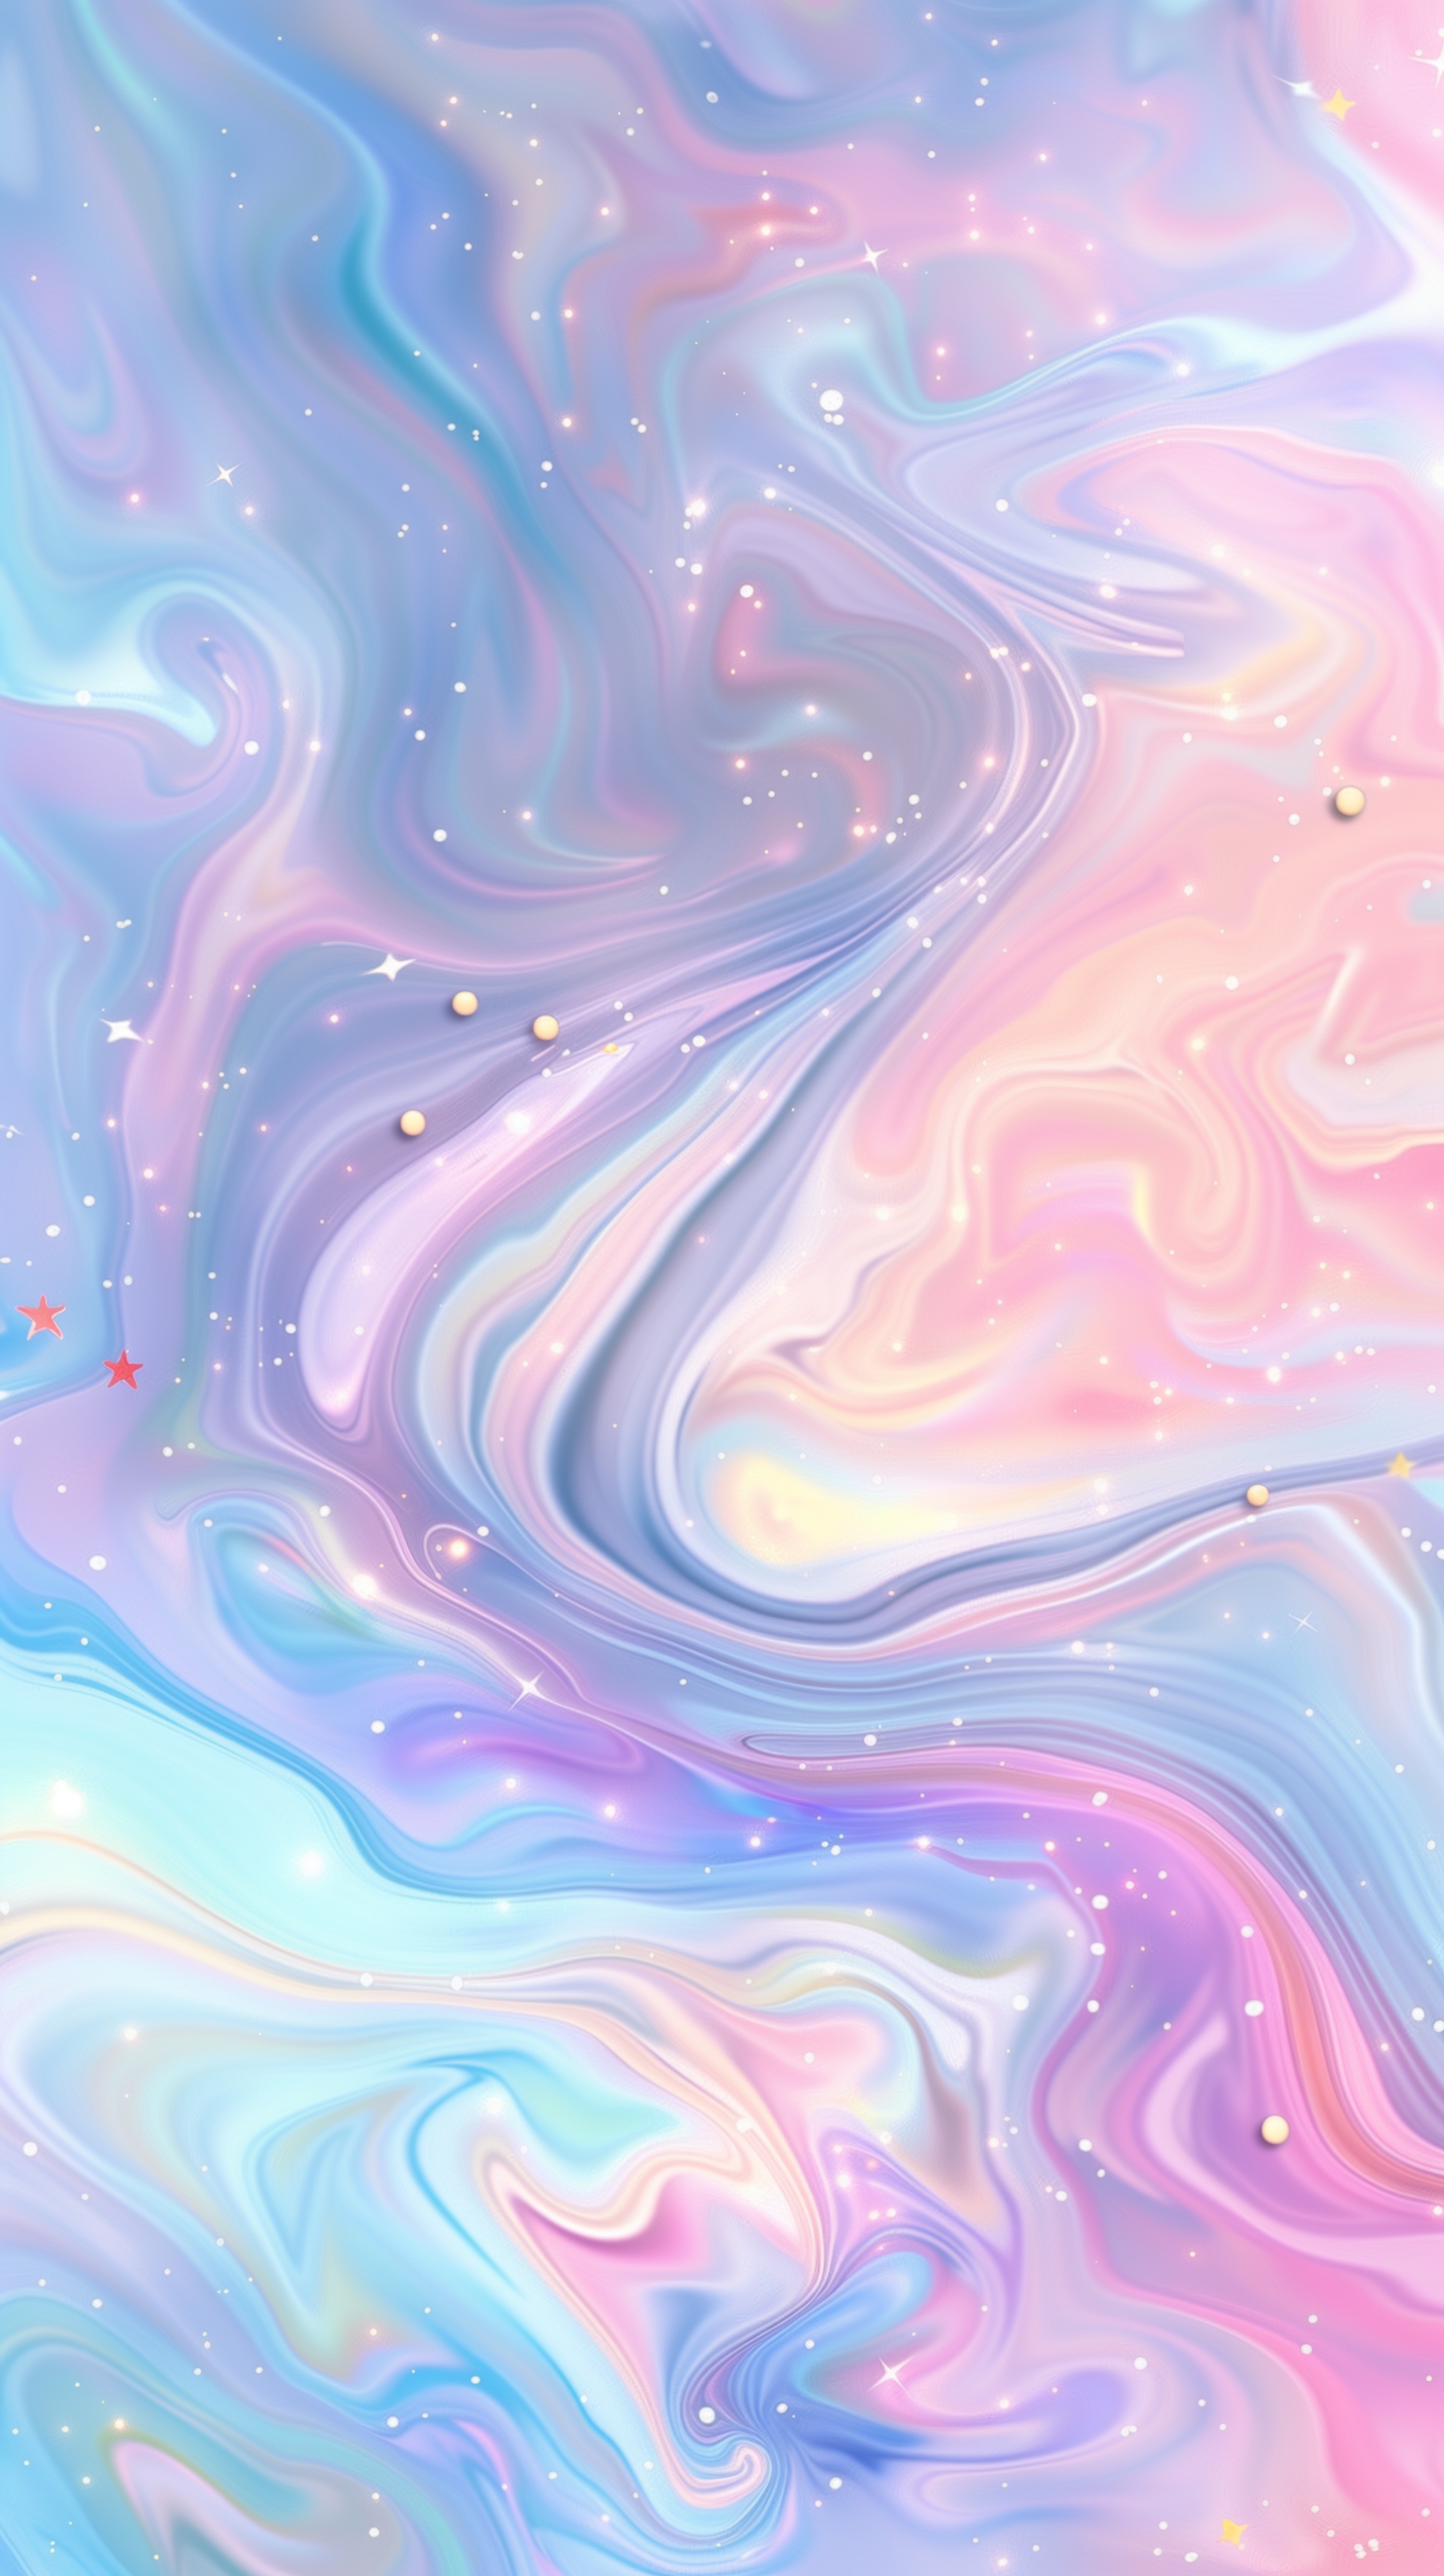 Swirling Pastel Galaxy with Stars Дэлгэцийн зураг[58935a042c3f47169f40]